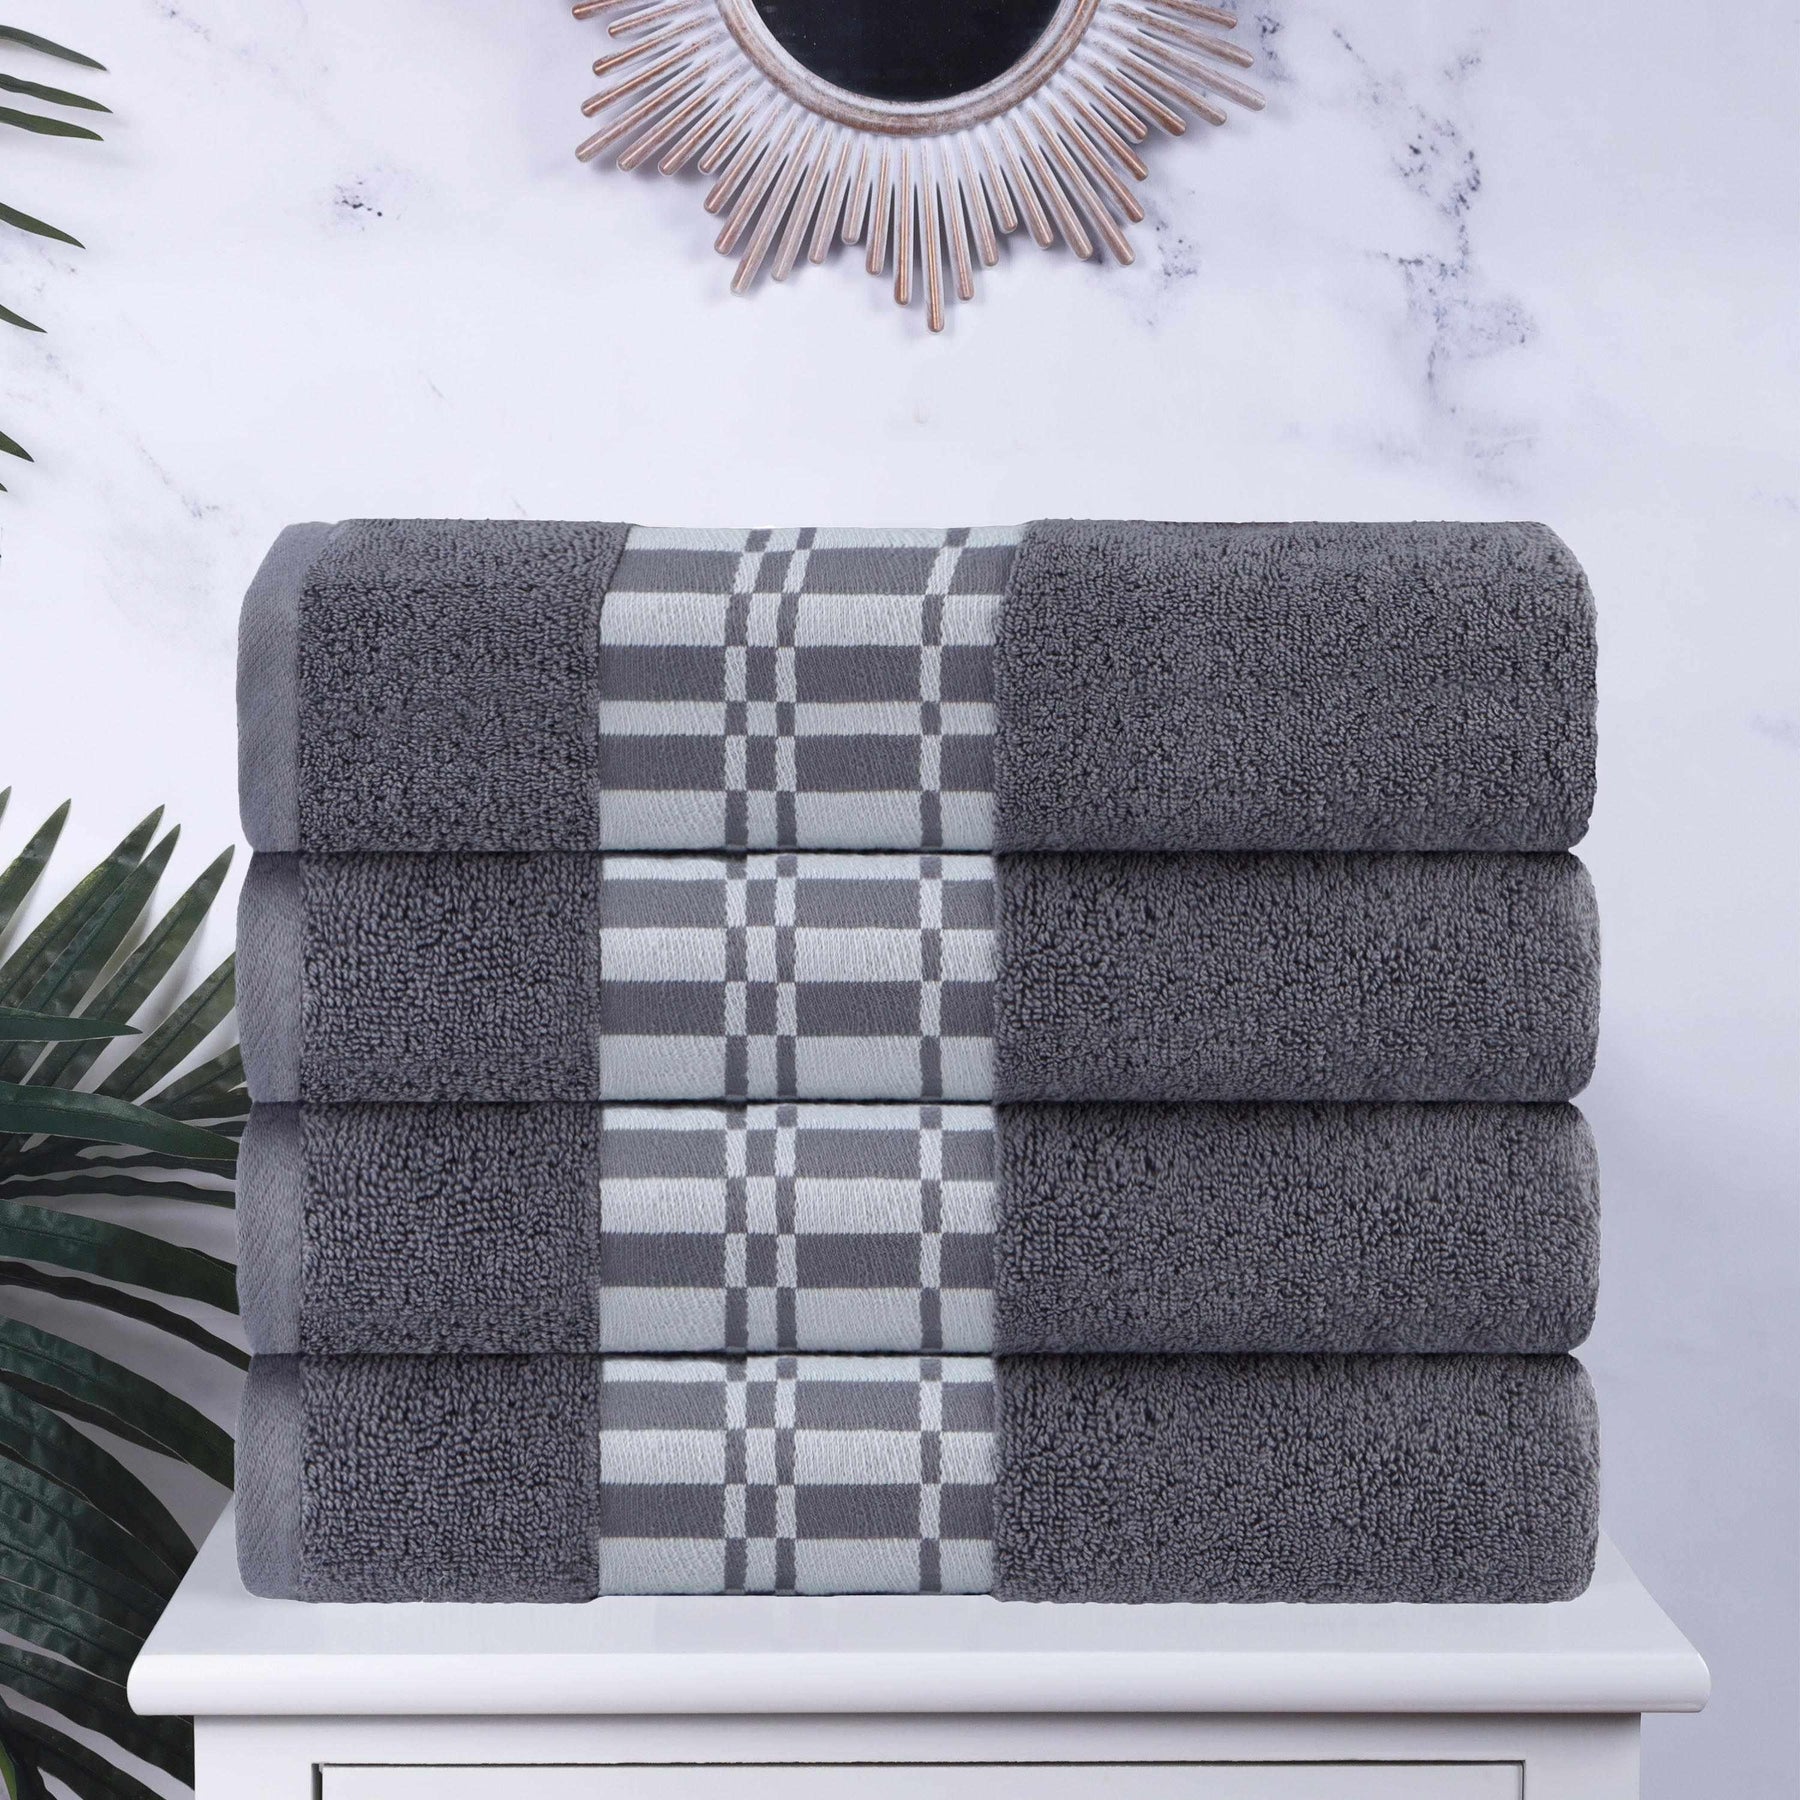 Superior Athens Cotton 6-Piece Decorative Towels, Ivory/ Black